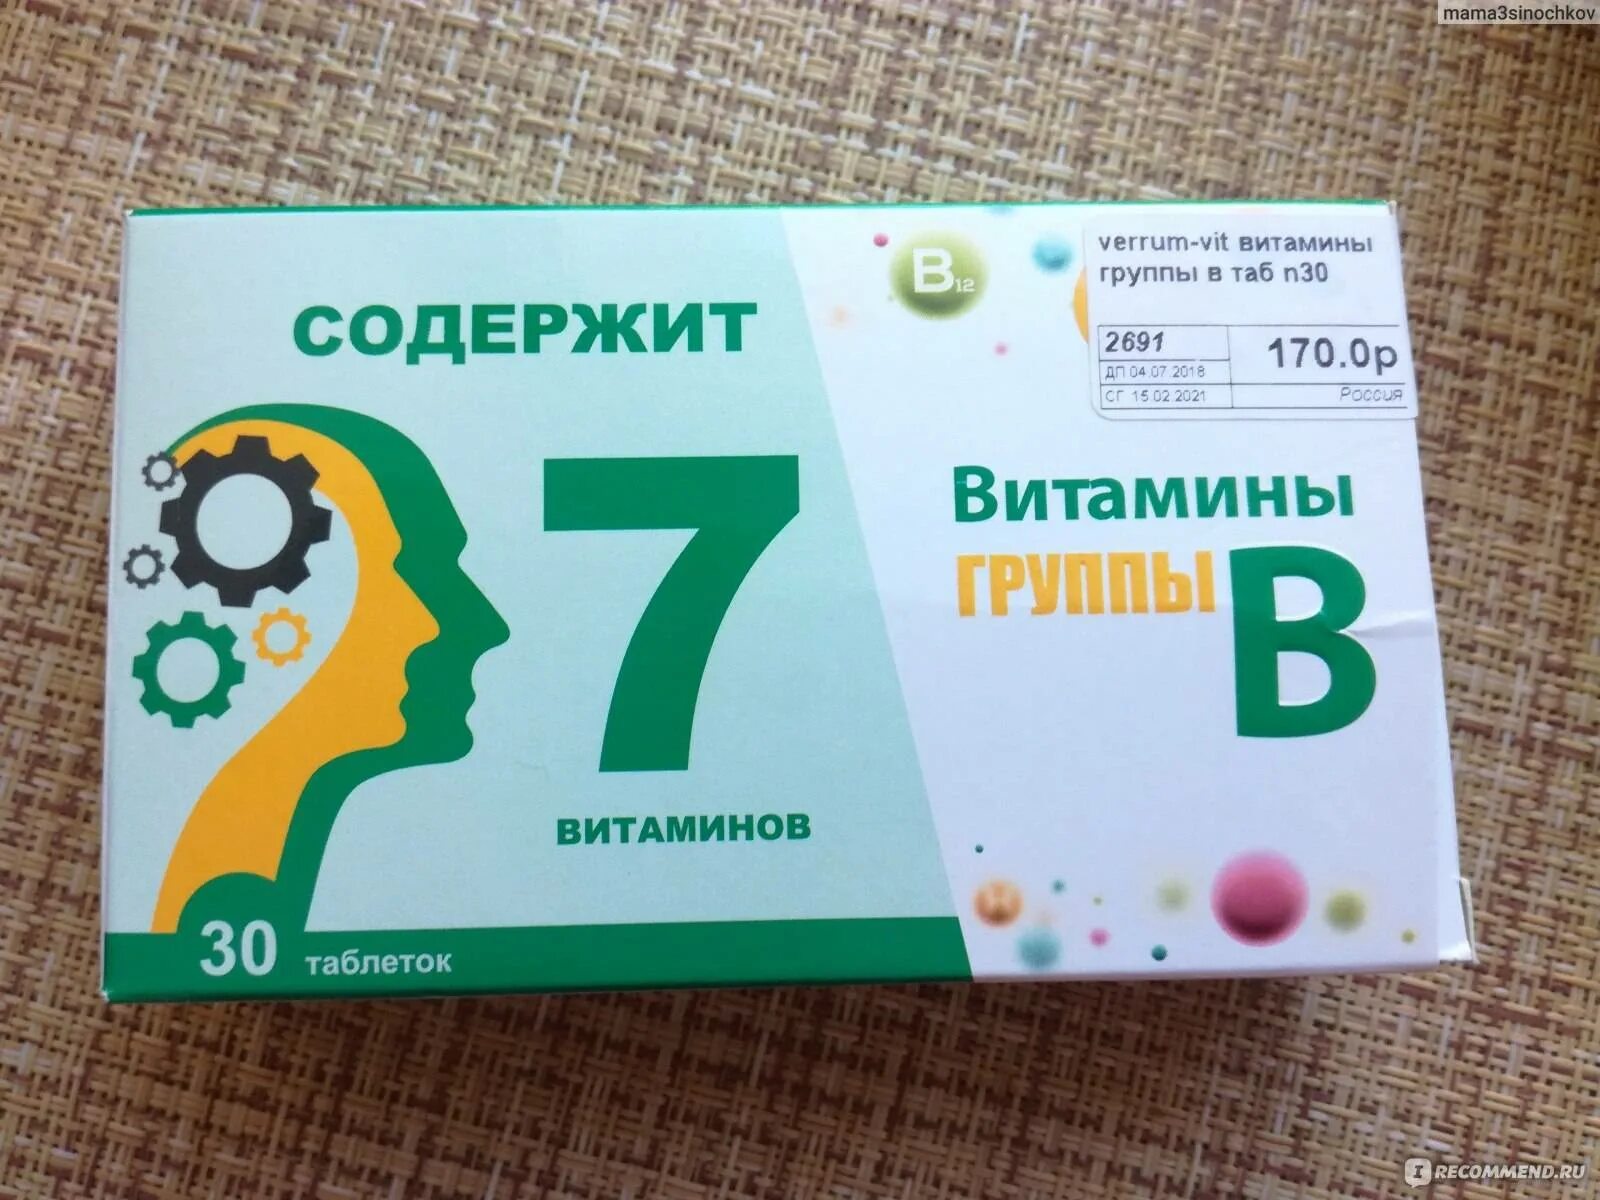 Витаминный комплекс в12 в6. Комплекс витаминов в2 в6 в12. Витаминный комплекс в6 в9 в12. Витамины б1 б6 б12 в таблетках. Витамин б отзывы таблетки